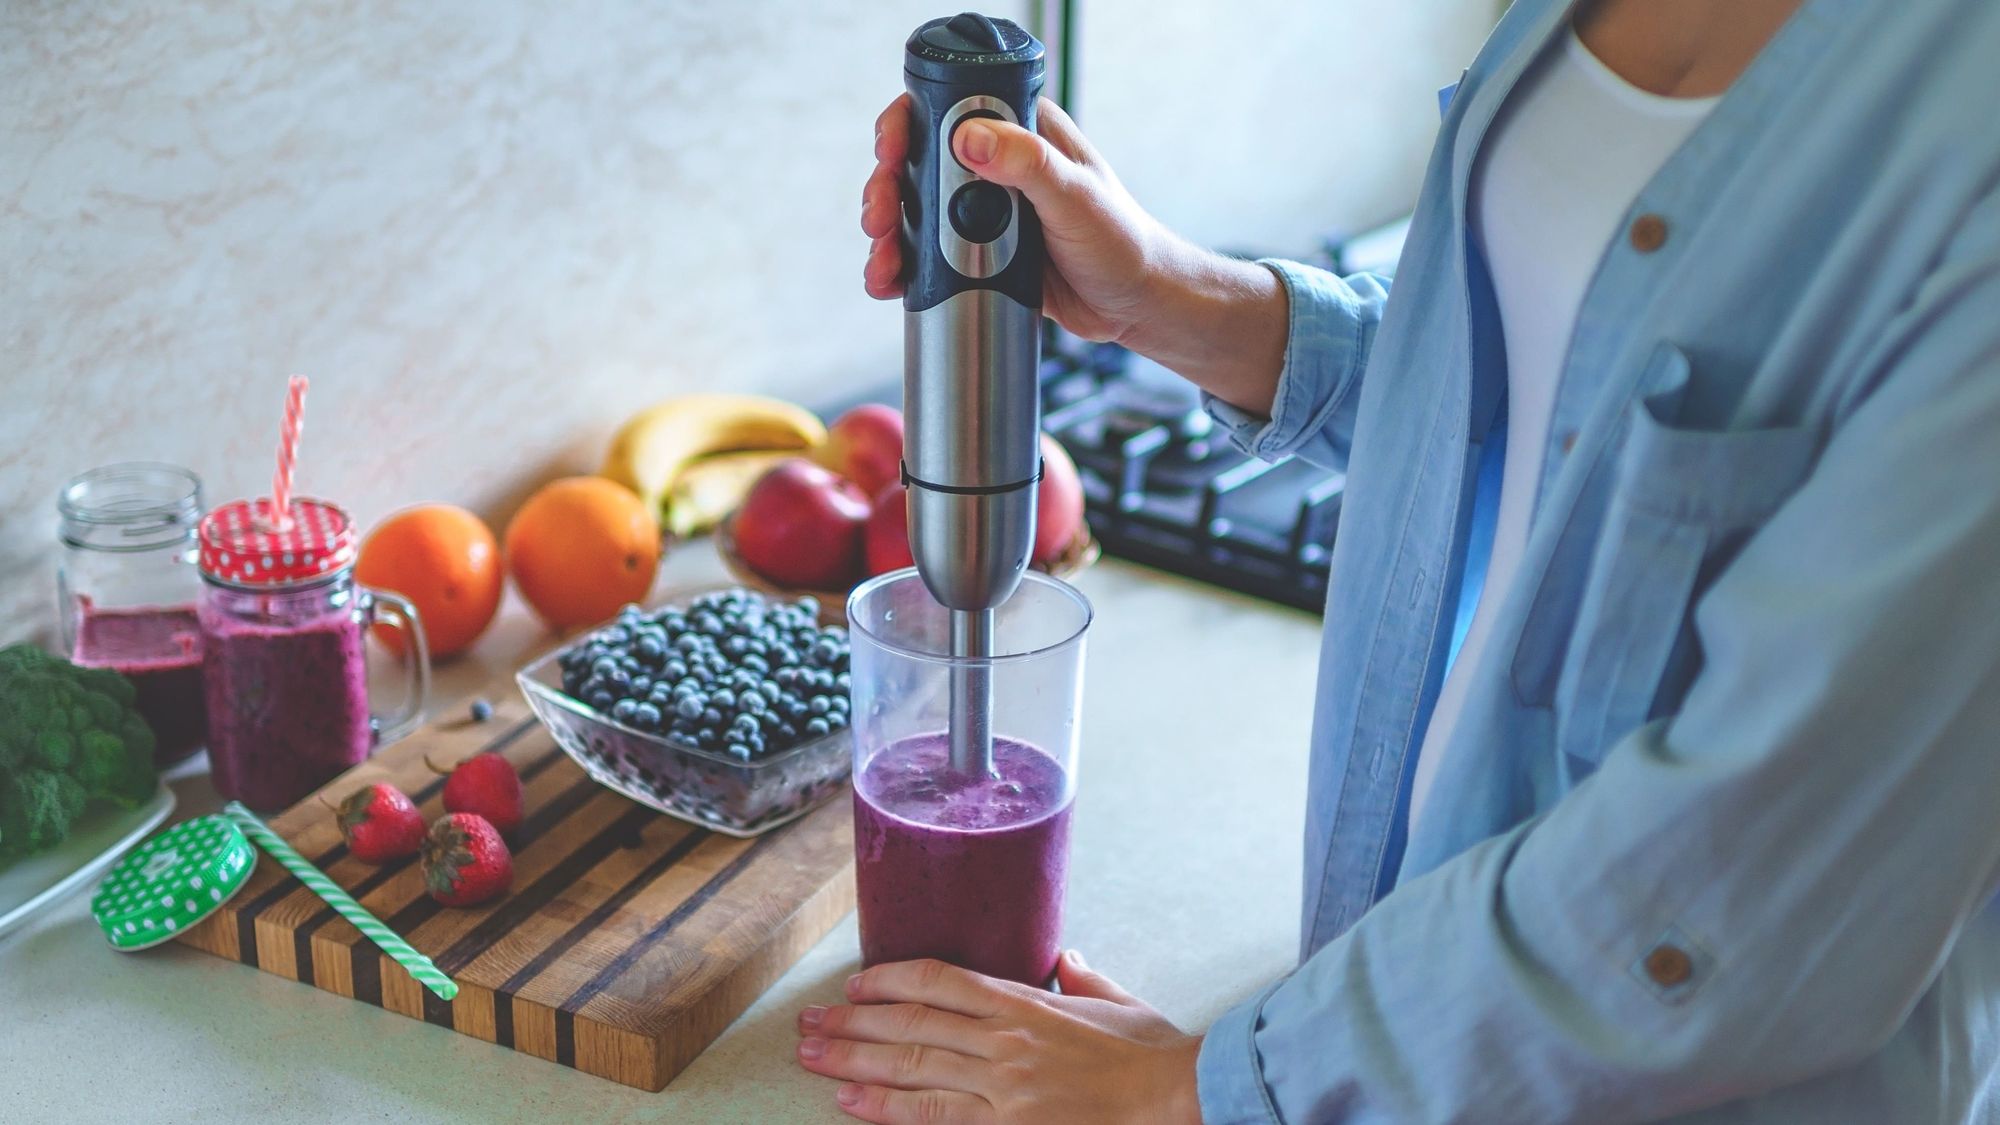 O posicionamento certo do mixer é essencial para que você consiga usar o aparelho na jarra (Imagem: Reprodução/Shutterstock)